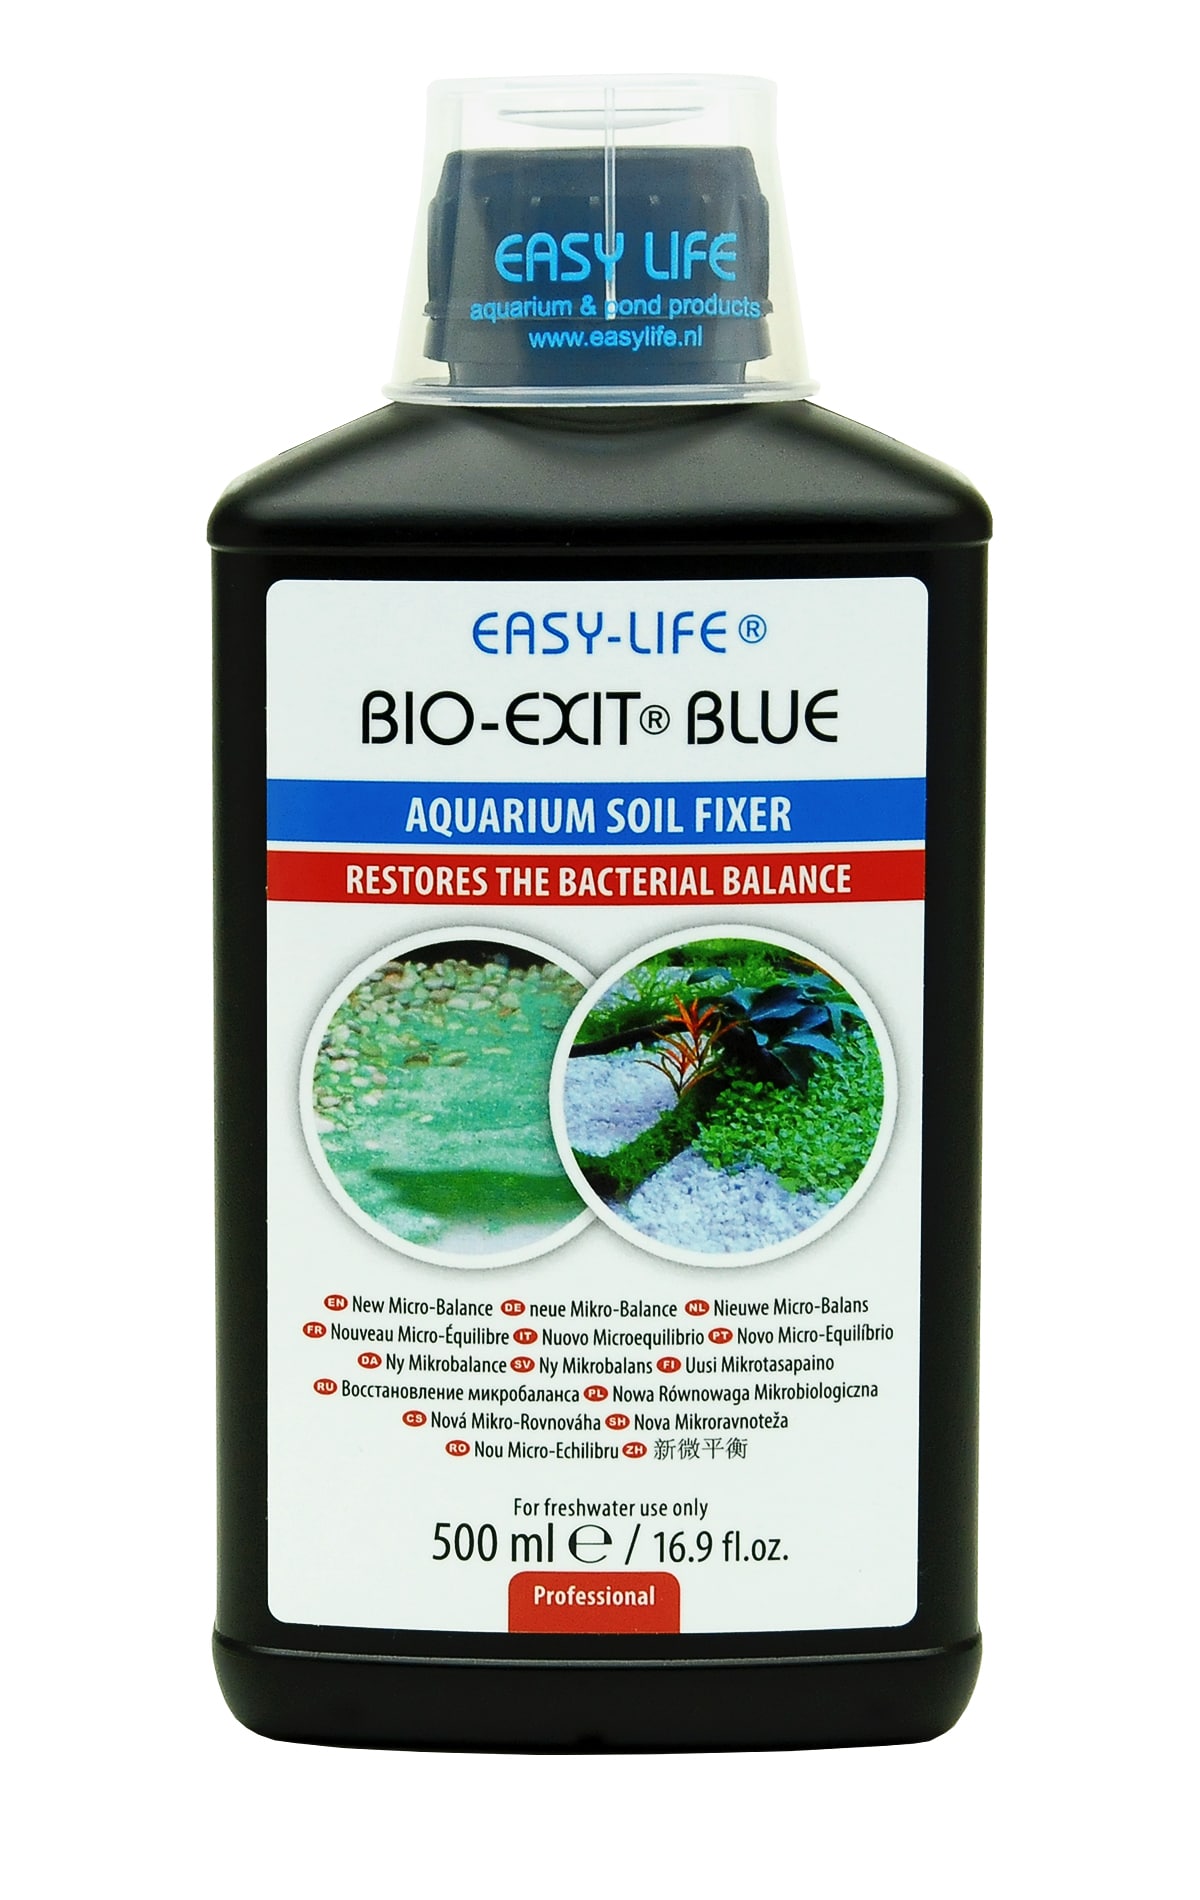 easy-life-bio-exit-blue-500-ml-reequilibre-les-bacteries-du-sol-pour-reduire-la-croissance-des-algues-bleues-et-de-cyanobacteries